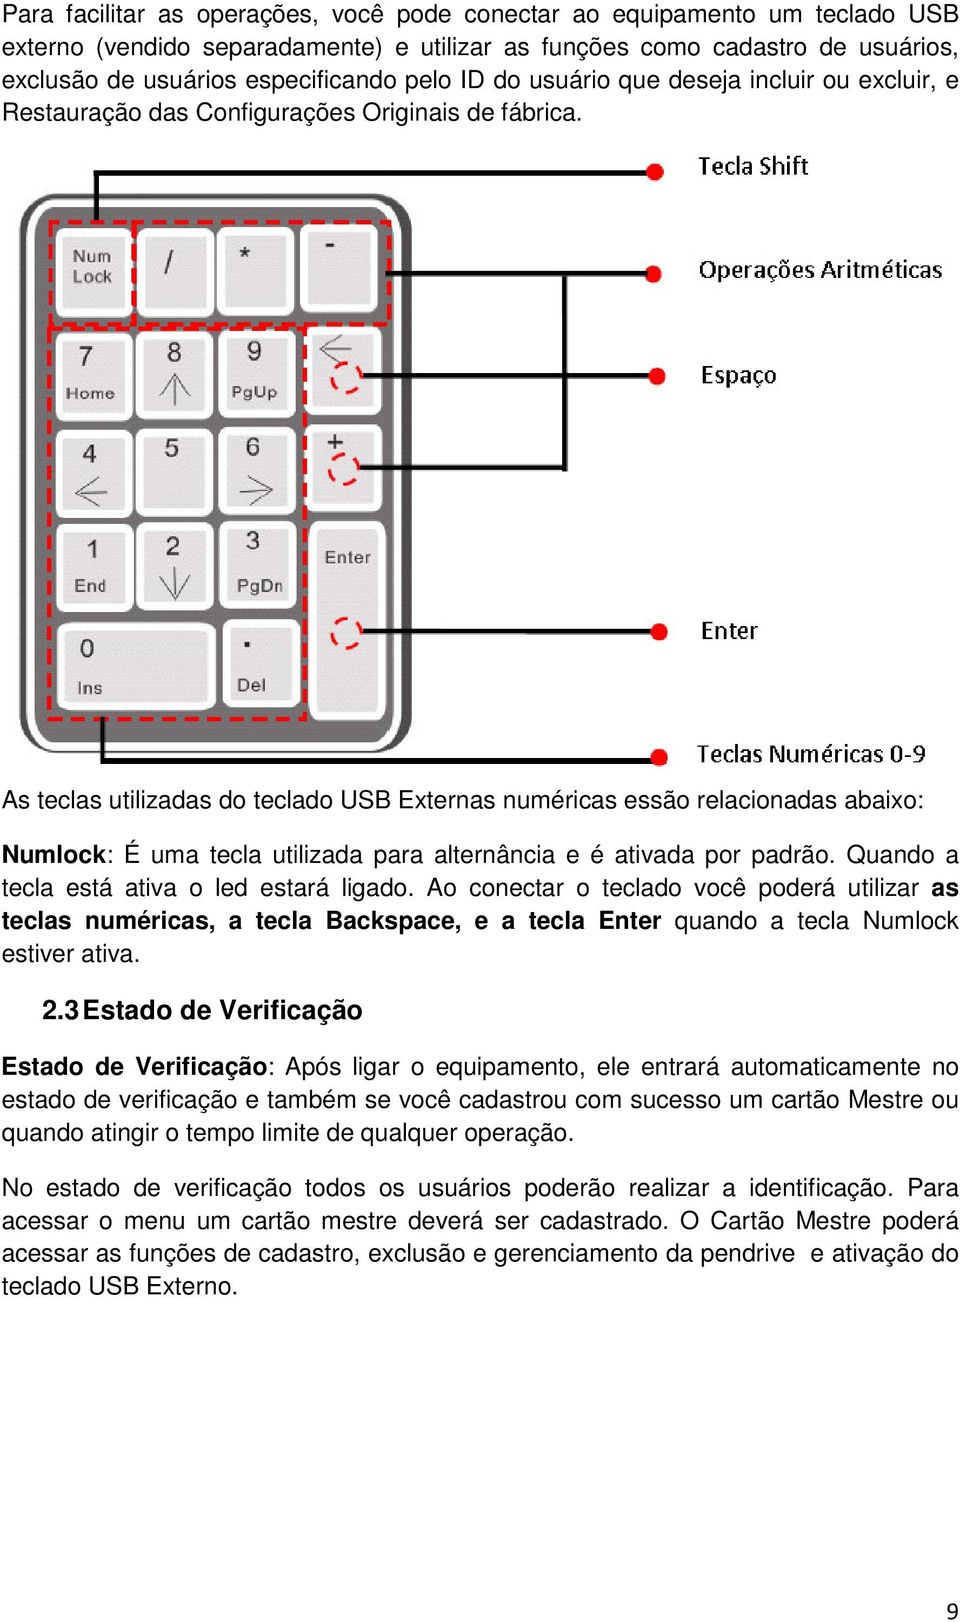 As teclas utilizadas do teclado USB Externas numéricas essão relacionadas abaixo: Numlock: É uma tecla utilizada para alternância e é ativada por padrão. Quando a tecla está ativa o led estará ligado.